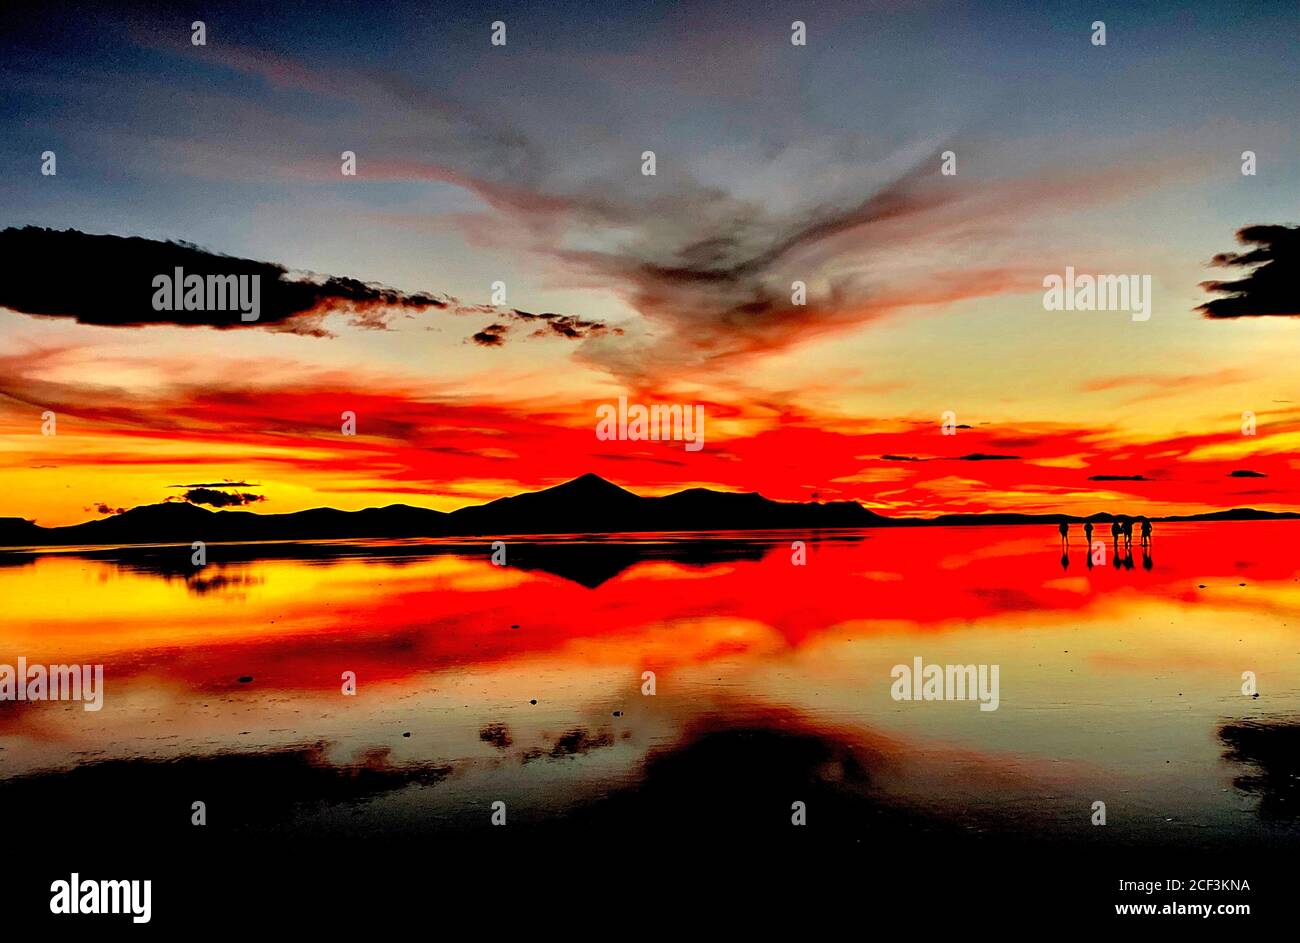 Bellissimo tramonto rosso sulle saline a Salar de Uyuni, Bolivia. Scenografia drammatica del cielo del tramonto. Riflessione nell'acqua del lago. Silhouette scure delle persone. Foto Stock